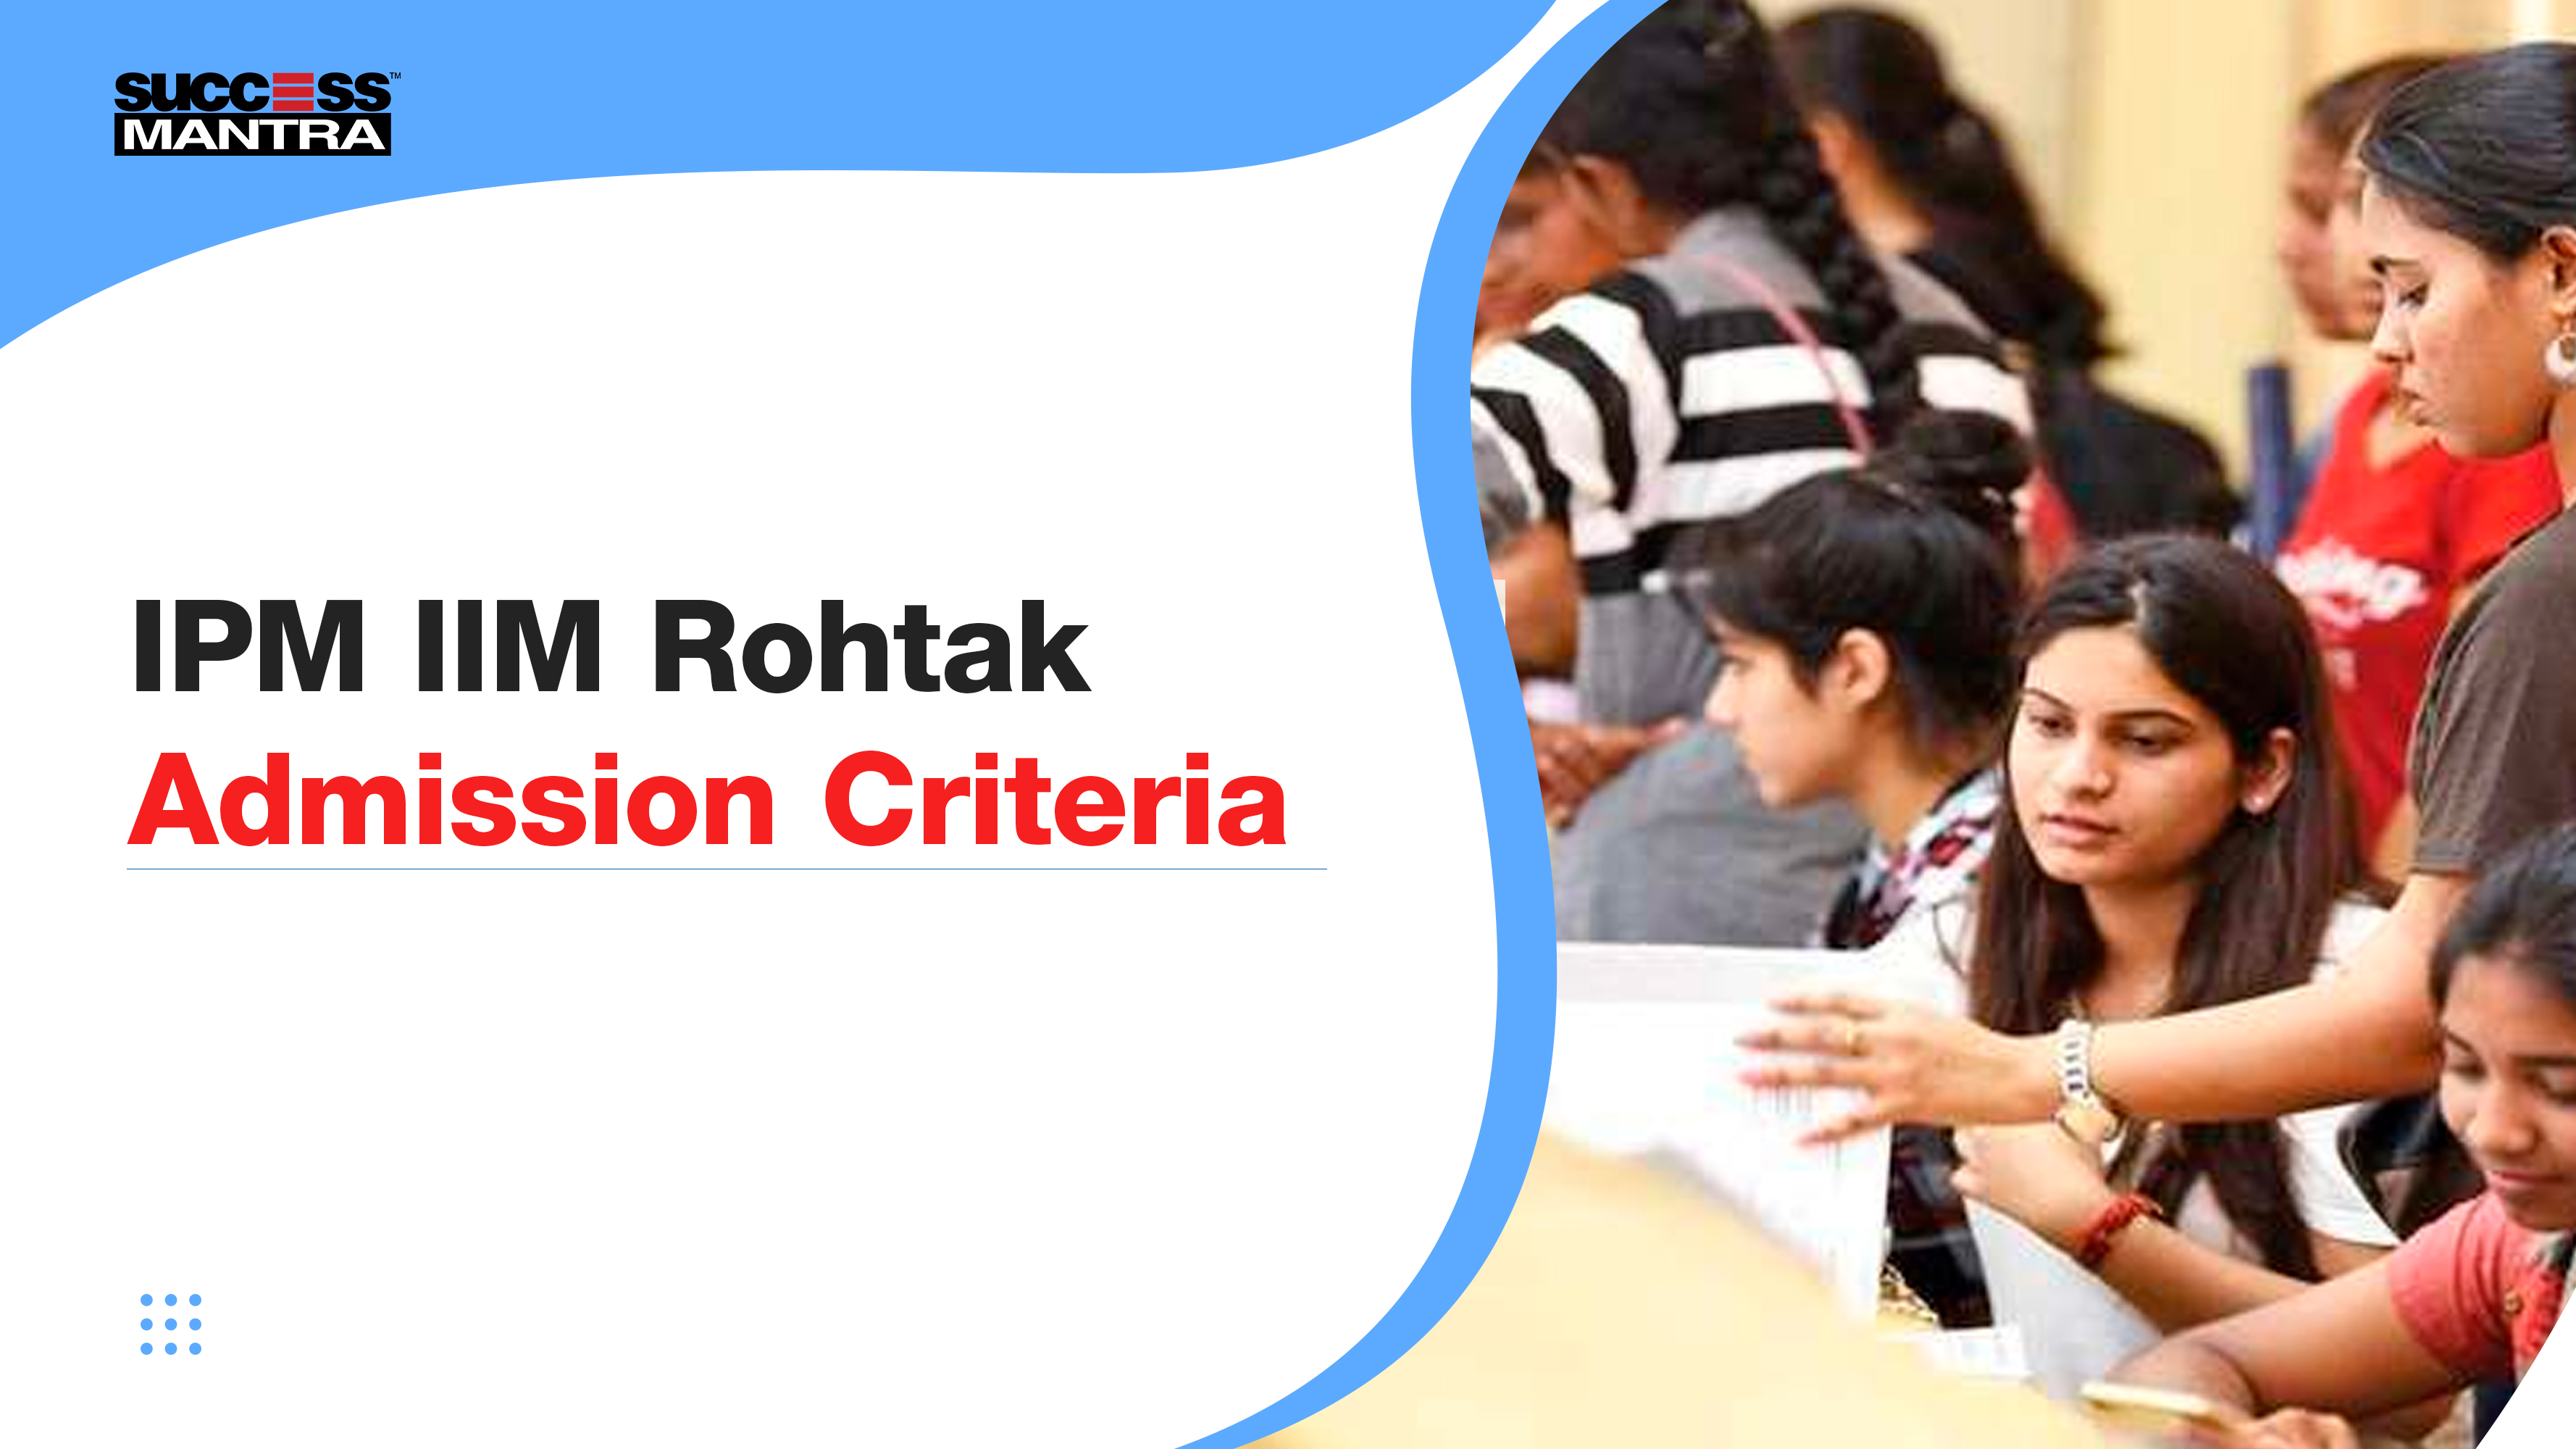 IPM IIM Rohtak Admission Criteria